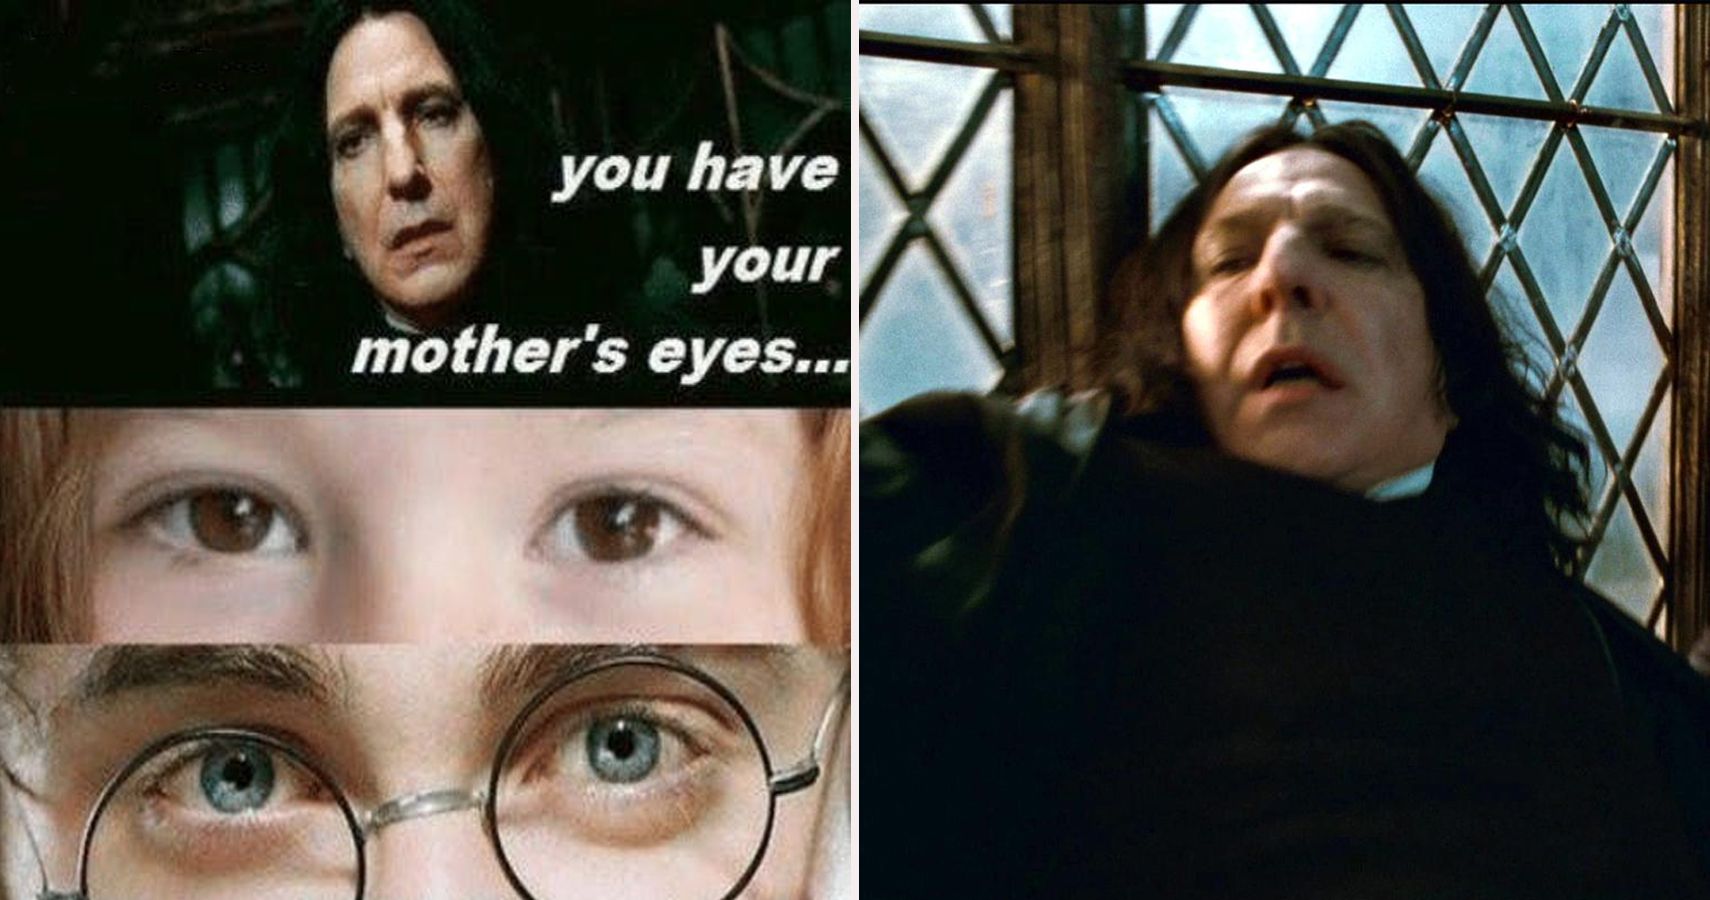 Harry Potter Memes and - Harry Potter Memes and Stuff